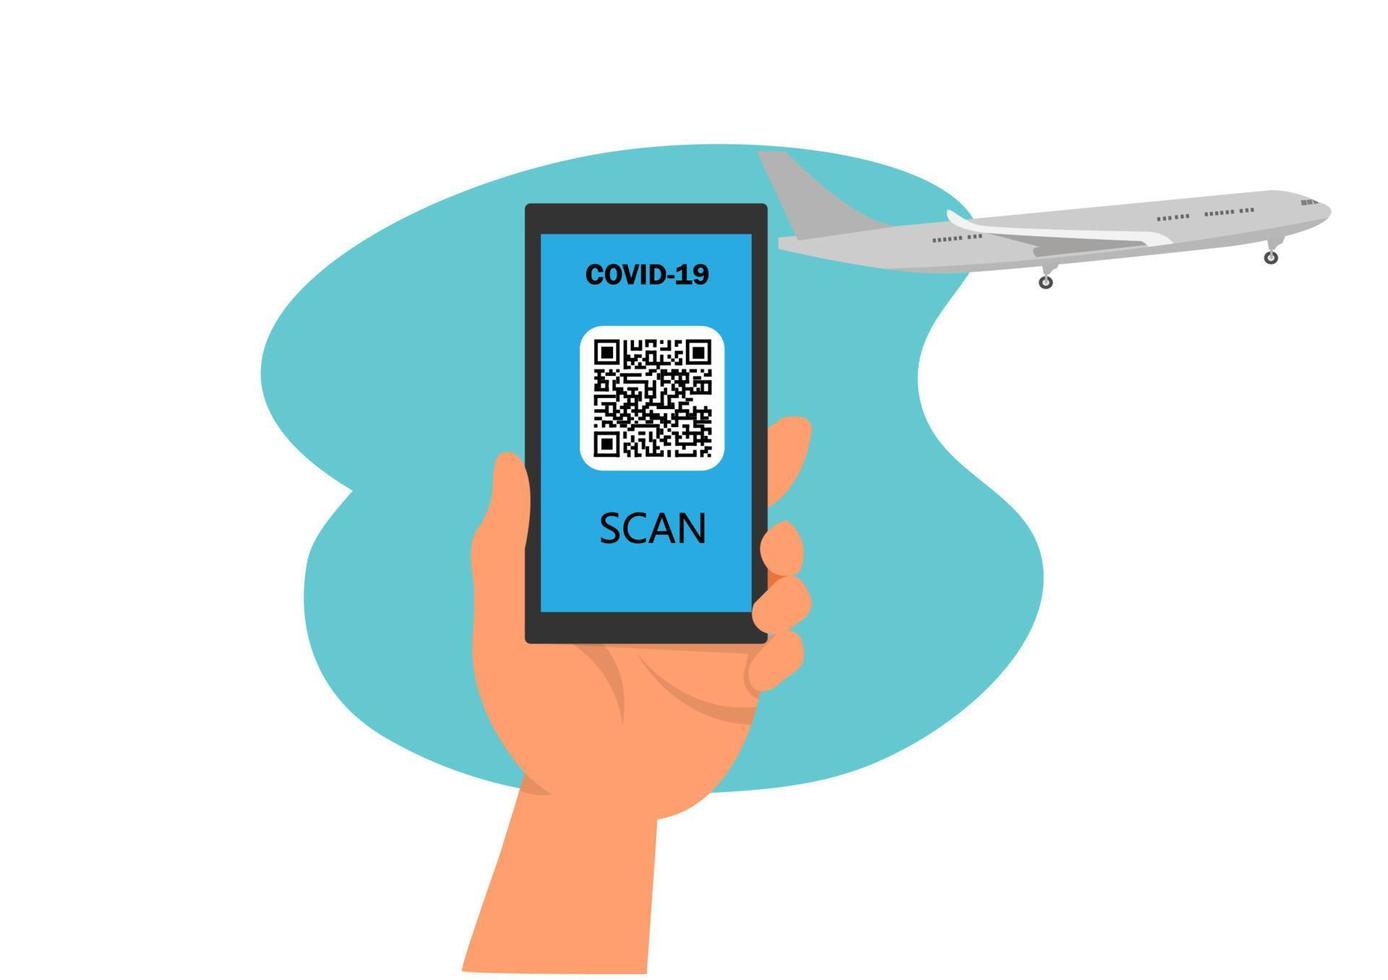 libertà di movimento il passaporto sanitario elettronico nell'applicazione sullo schermo del telefono cellulare dell'imprenditore ha un codice QR per il diritto di volo. vettore di illustrazione del fumetto in stile piatto.